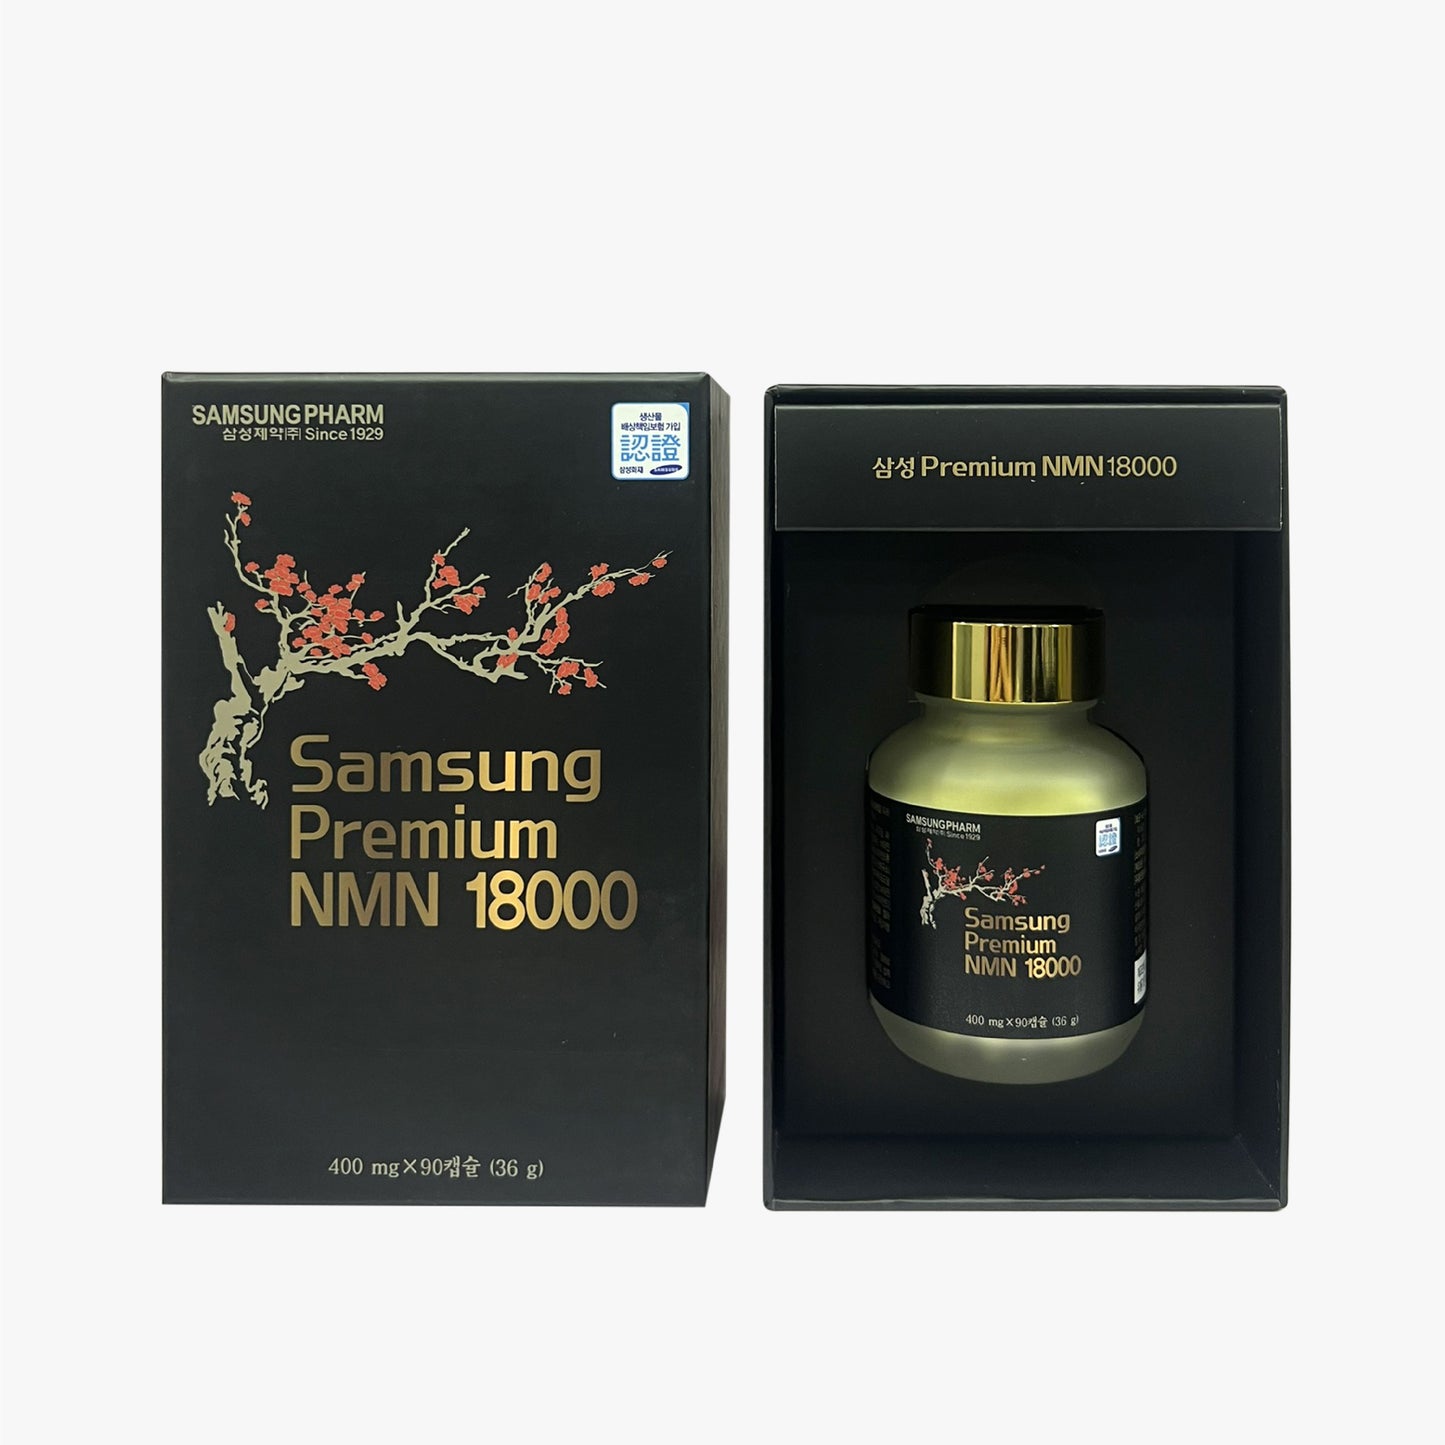 Samsung Premium NMN 18000